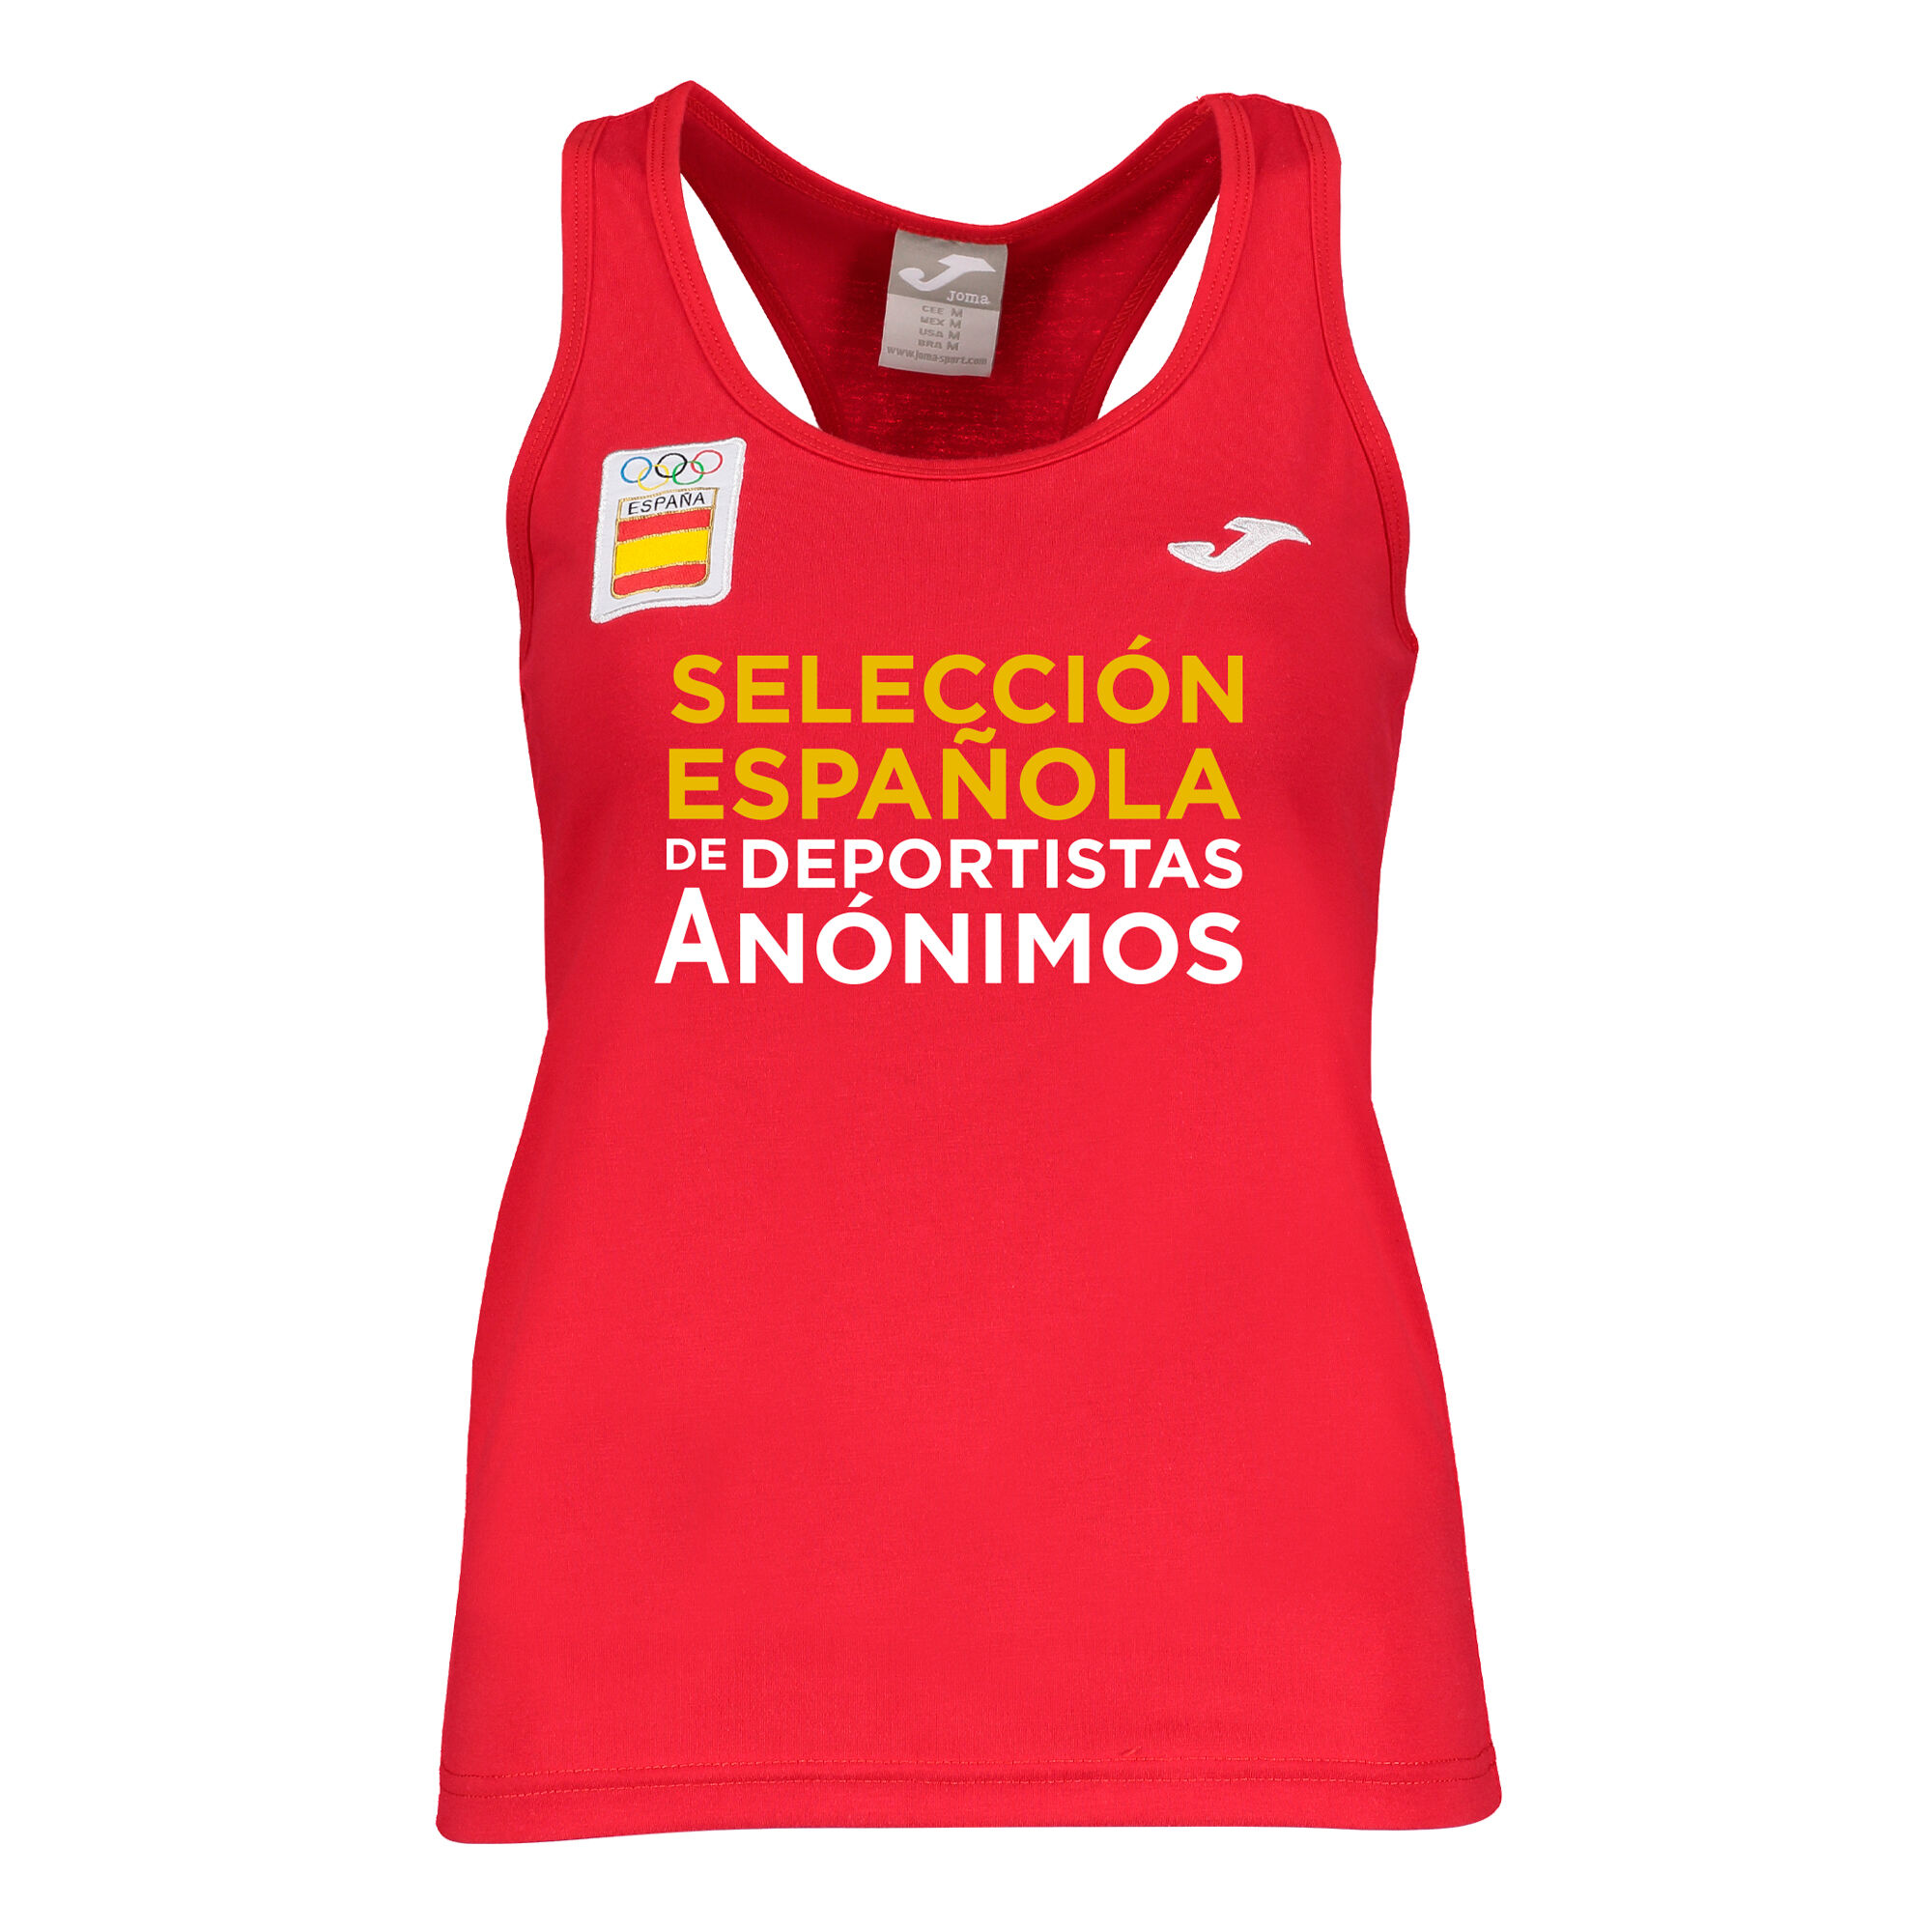 Shirt s/m spaziergang Spanisches Olympisches Komitee frau